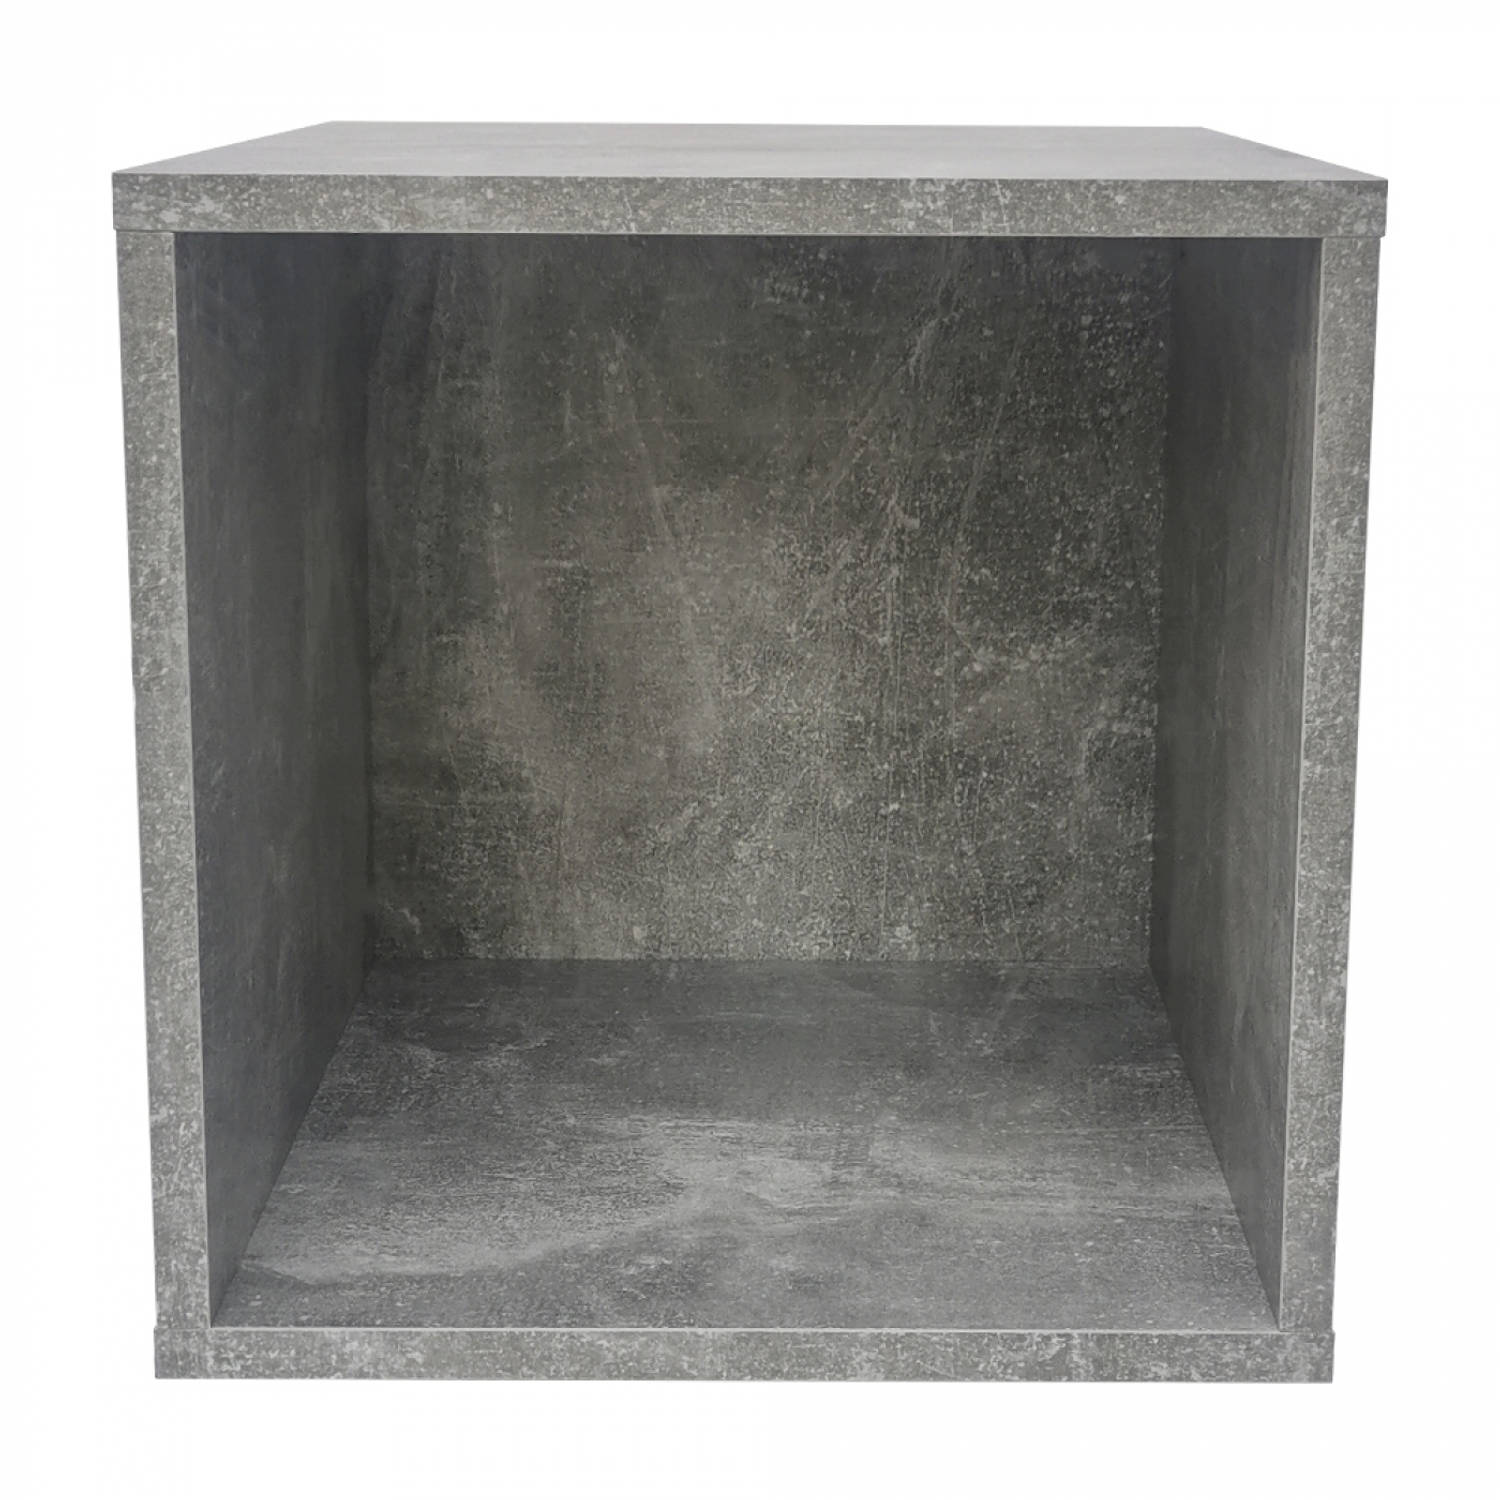 doorgaan met Implicaties buis Opbergkubus Vakkie multifunctioneel vierkant - stapelbaar opbergsysteem -  grijs industrieel beton look | Blokker